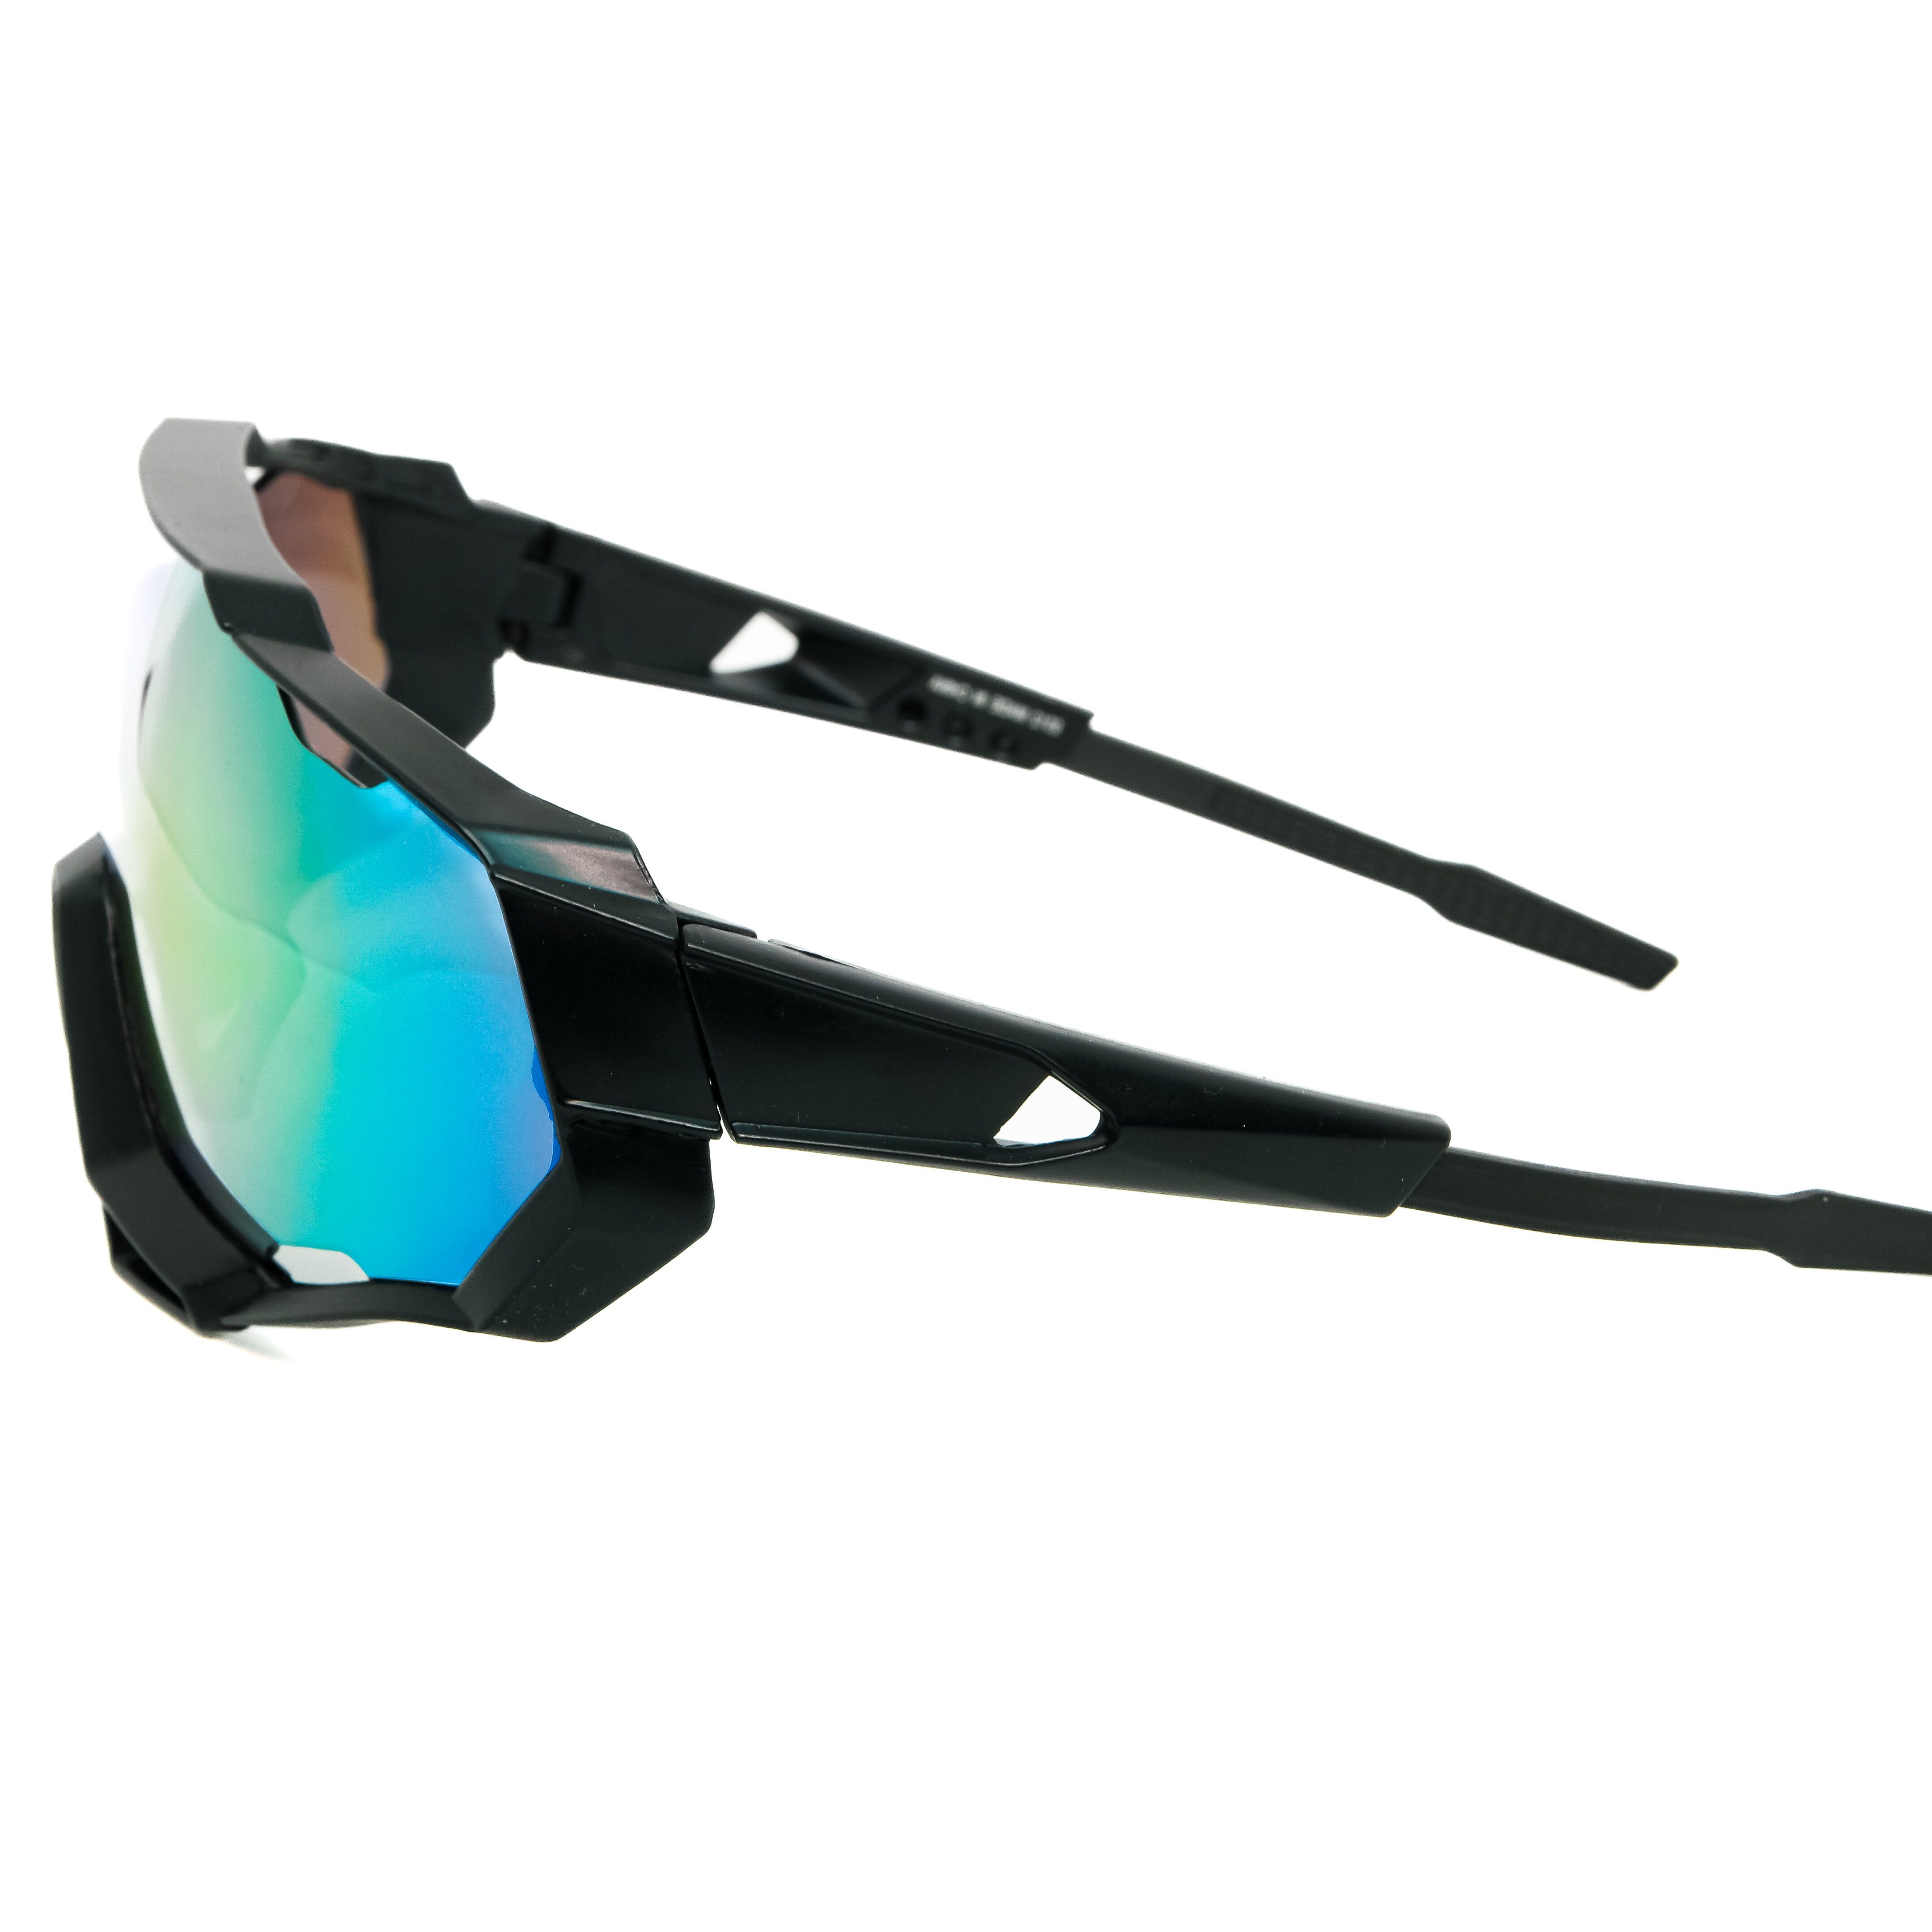 Skibrille Fahrradbrille Fahrradbrille Sonnenbrille Schwarz schnelle Sportbrille salazar.plus Radbrille